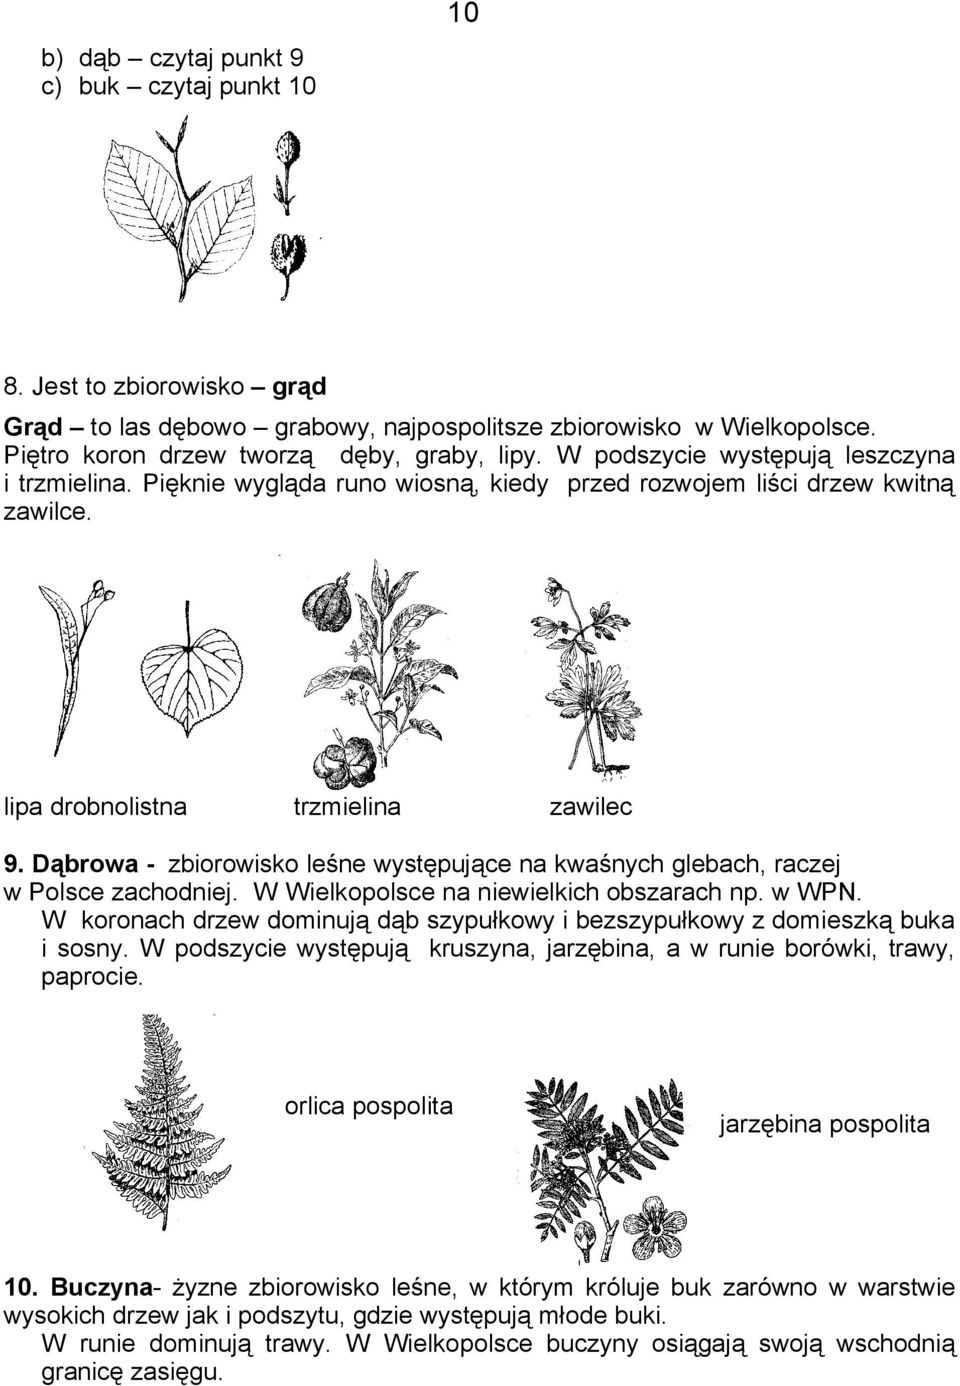 Dąbrowa - zbiorowisko leśne występujące na kwaśnych glebach, raczej w Polsce zachodniej. W Wielkopolsce na niewielkich obszarach np. w WPN.